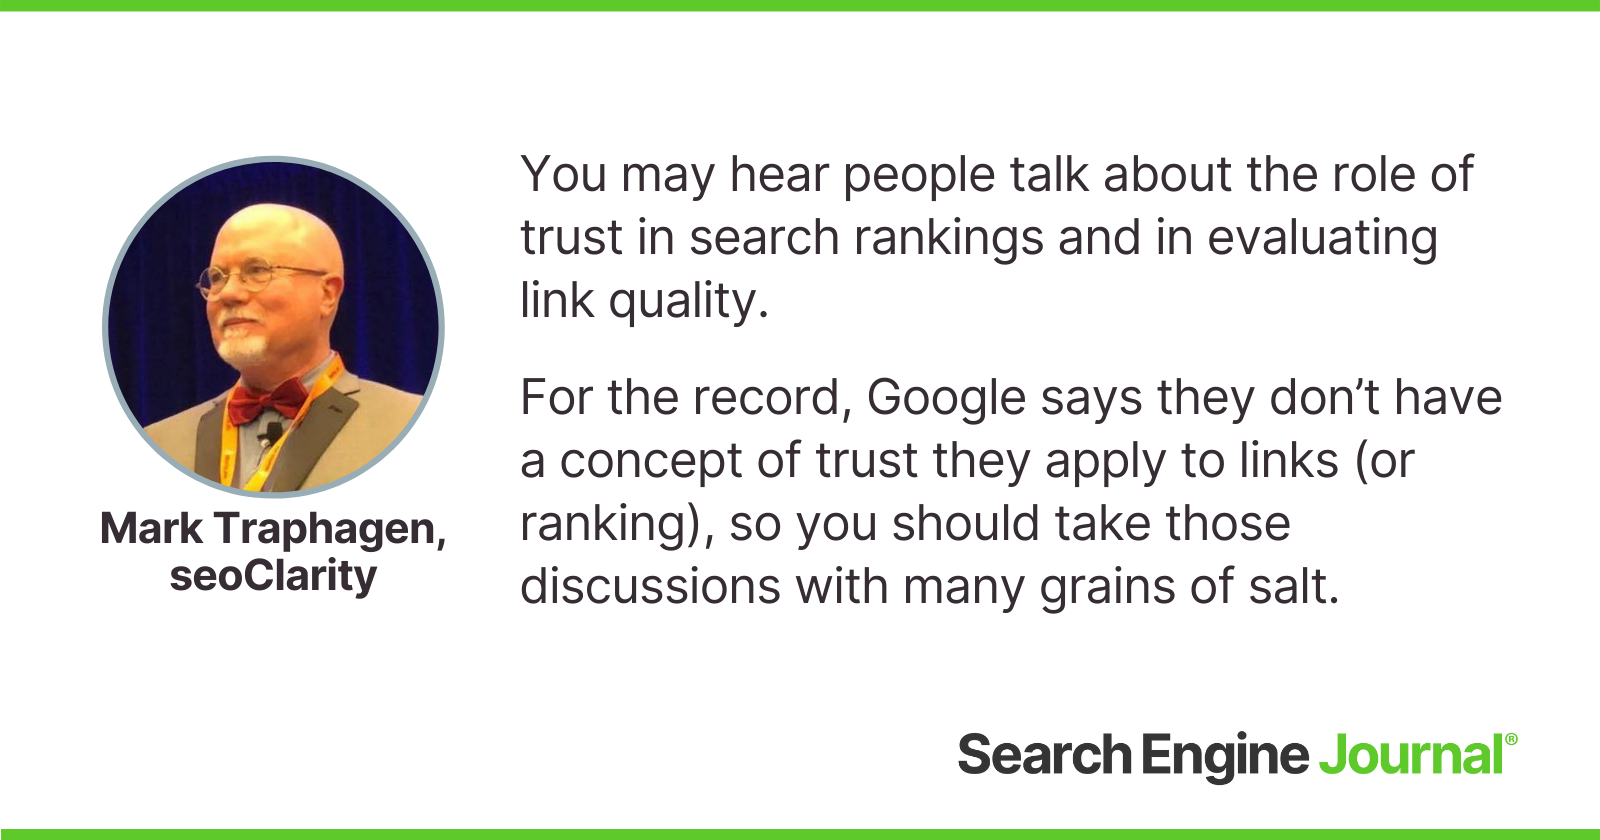 Mark Traphagen sobre el concepto de confianza en las clasificaciones de los motores de búsqueda.